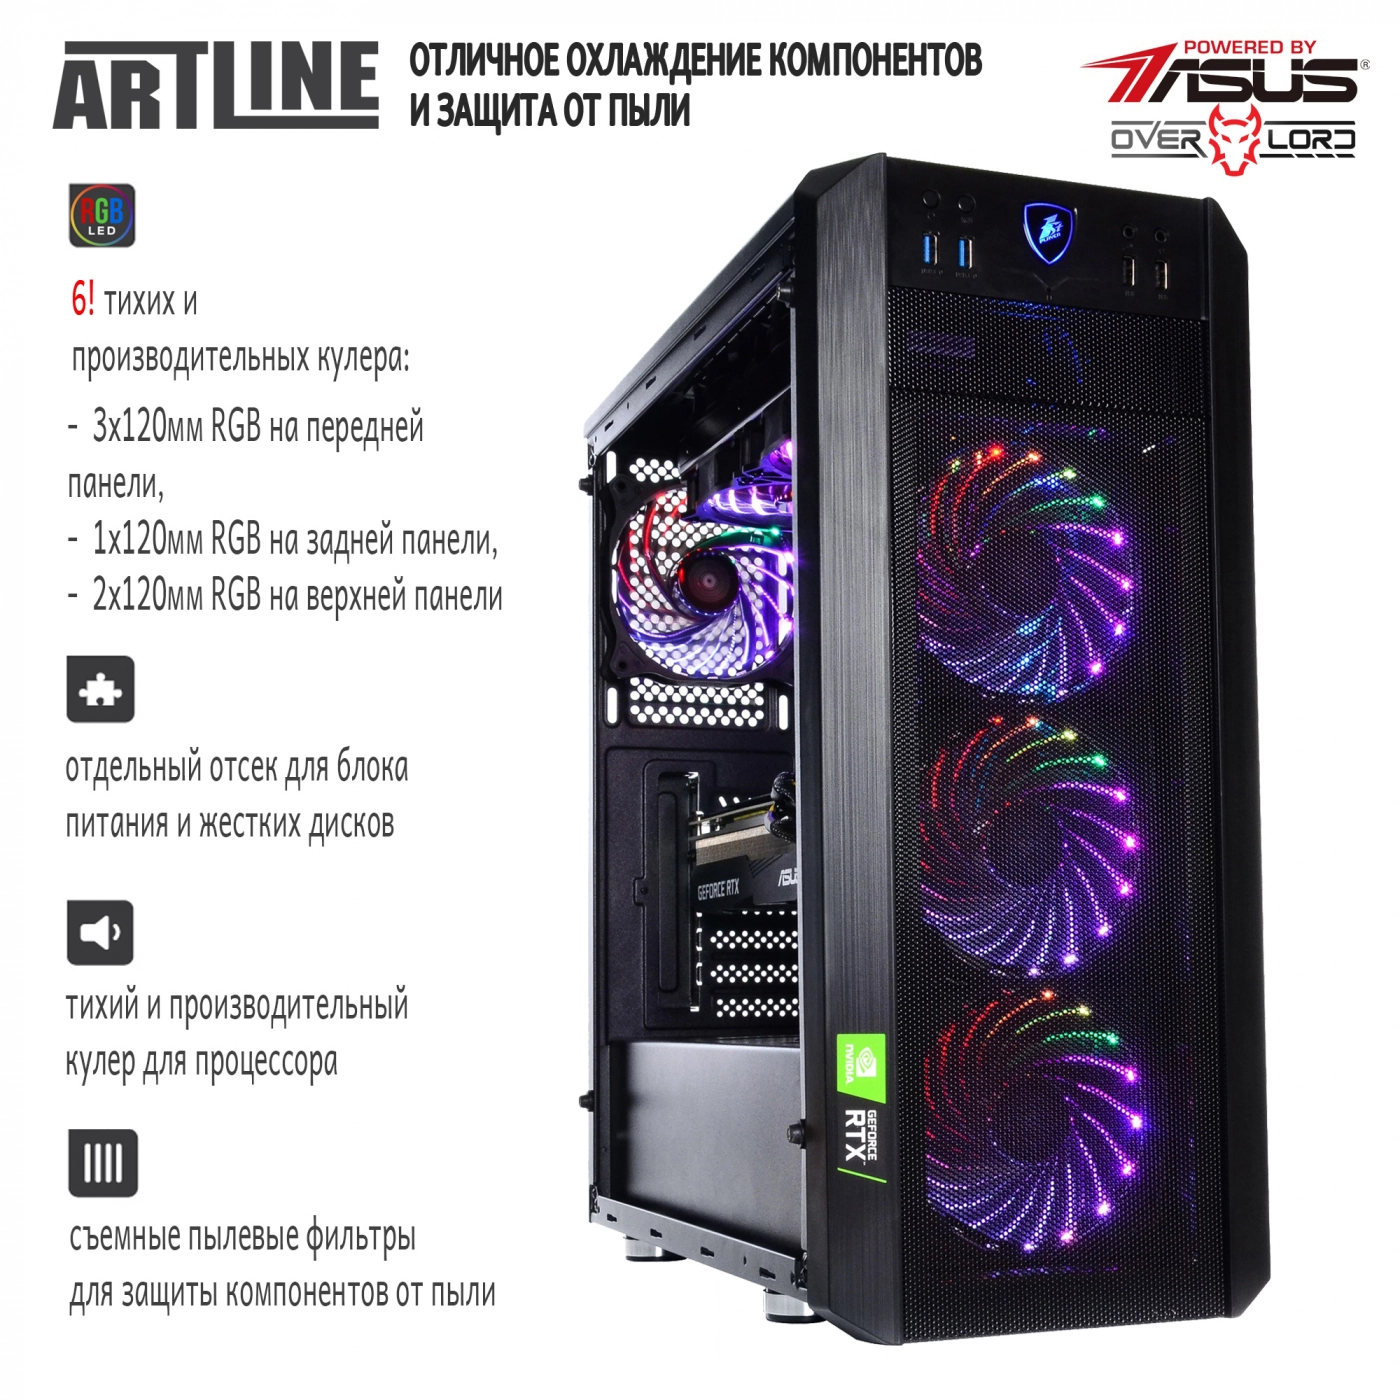 Купить Компьютер ARTLINE Gaming X96v25 - фото 3